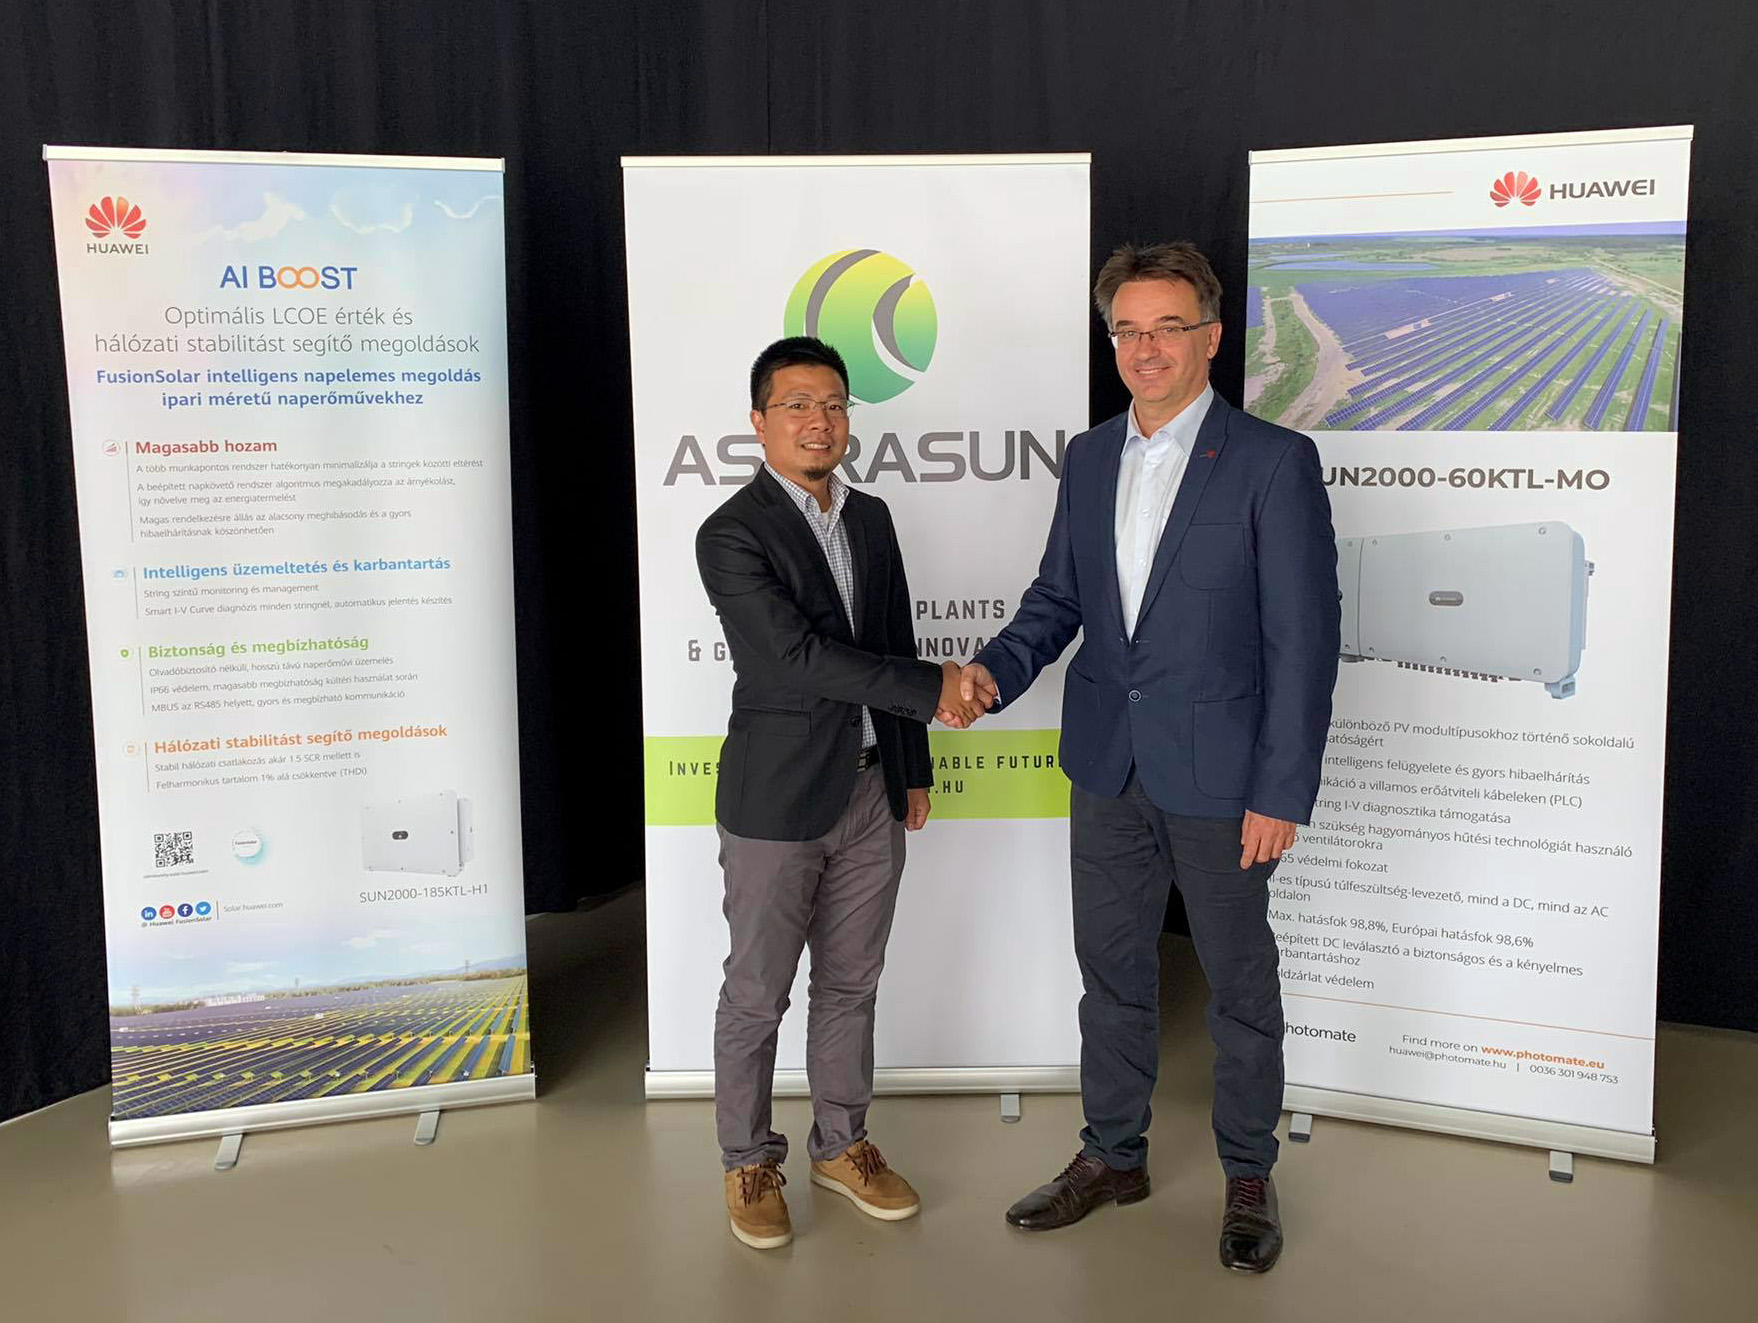 Astrasun - Huawei megállapodás